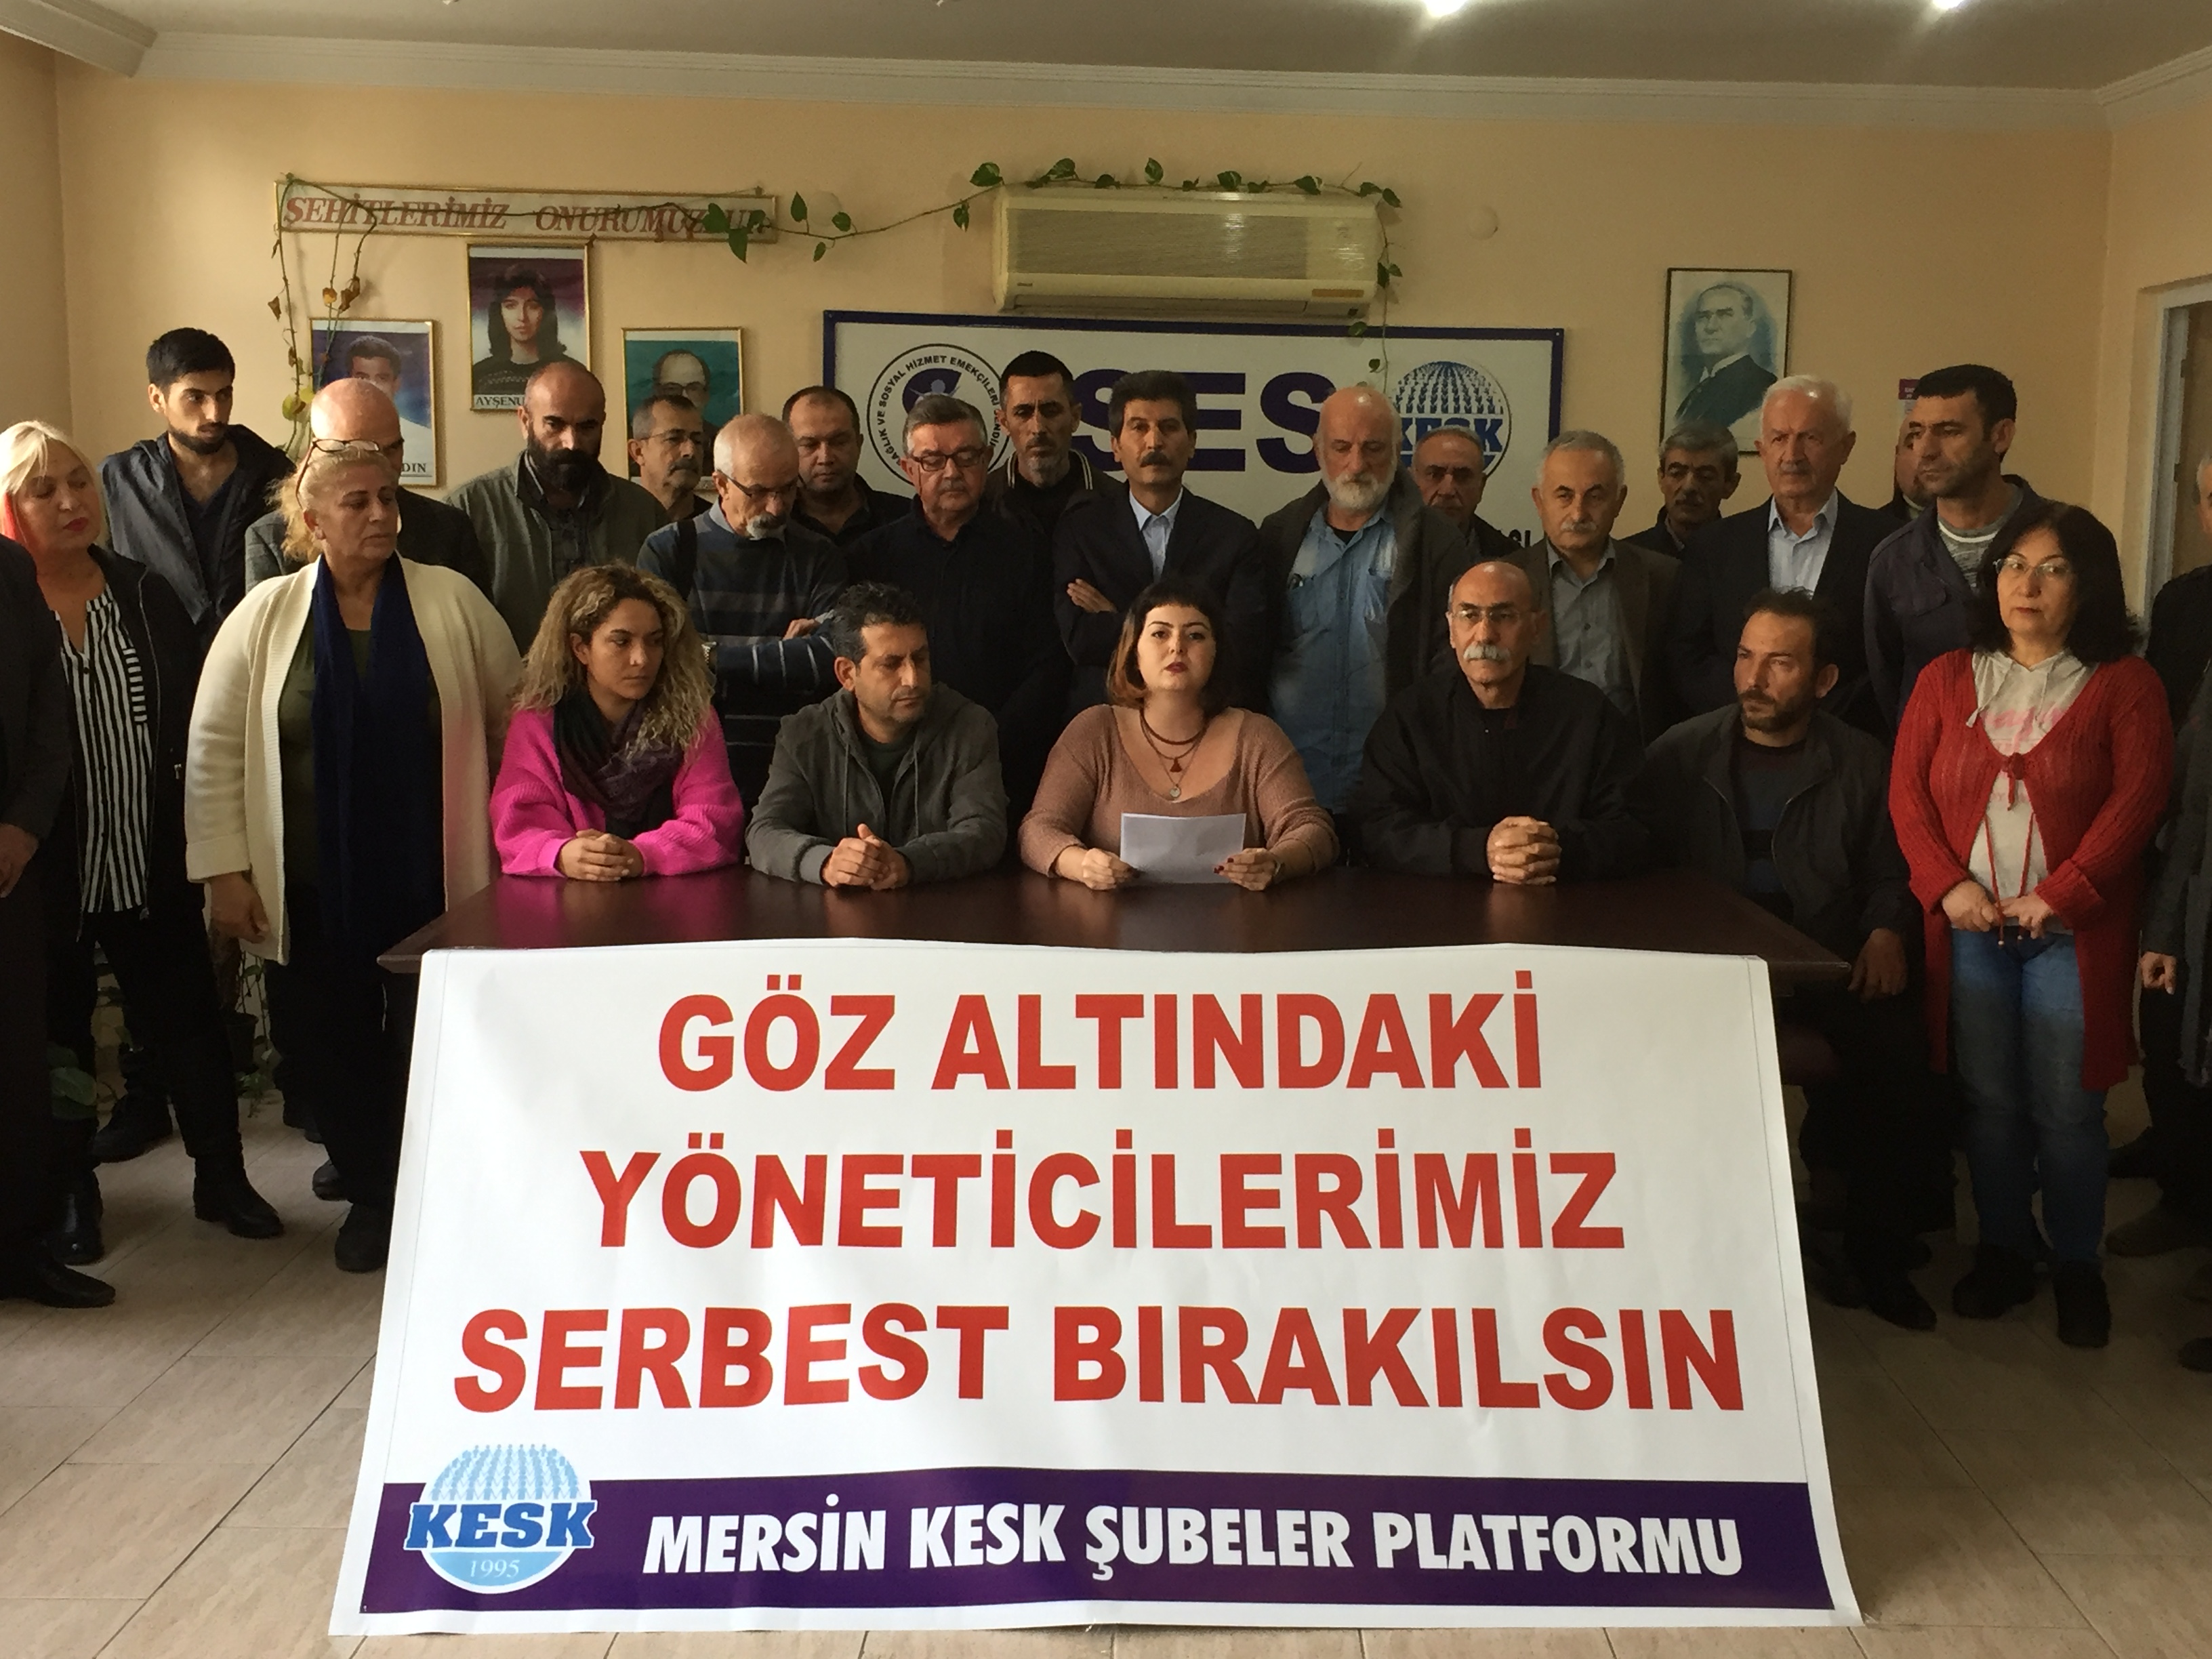 Mersin KESK Şubeler Platformu: Arkadaşlarımız derhal serbest bırakılmalı, hukuk tanımaz saldırılara son verilmelidir!